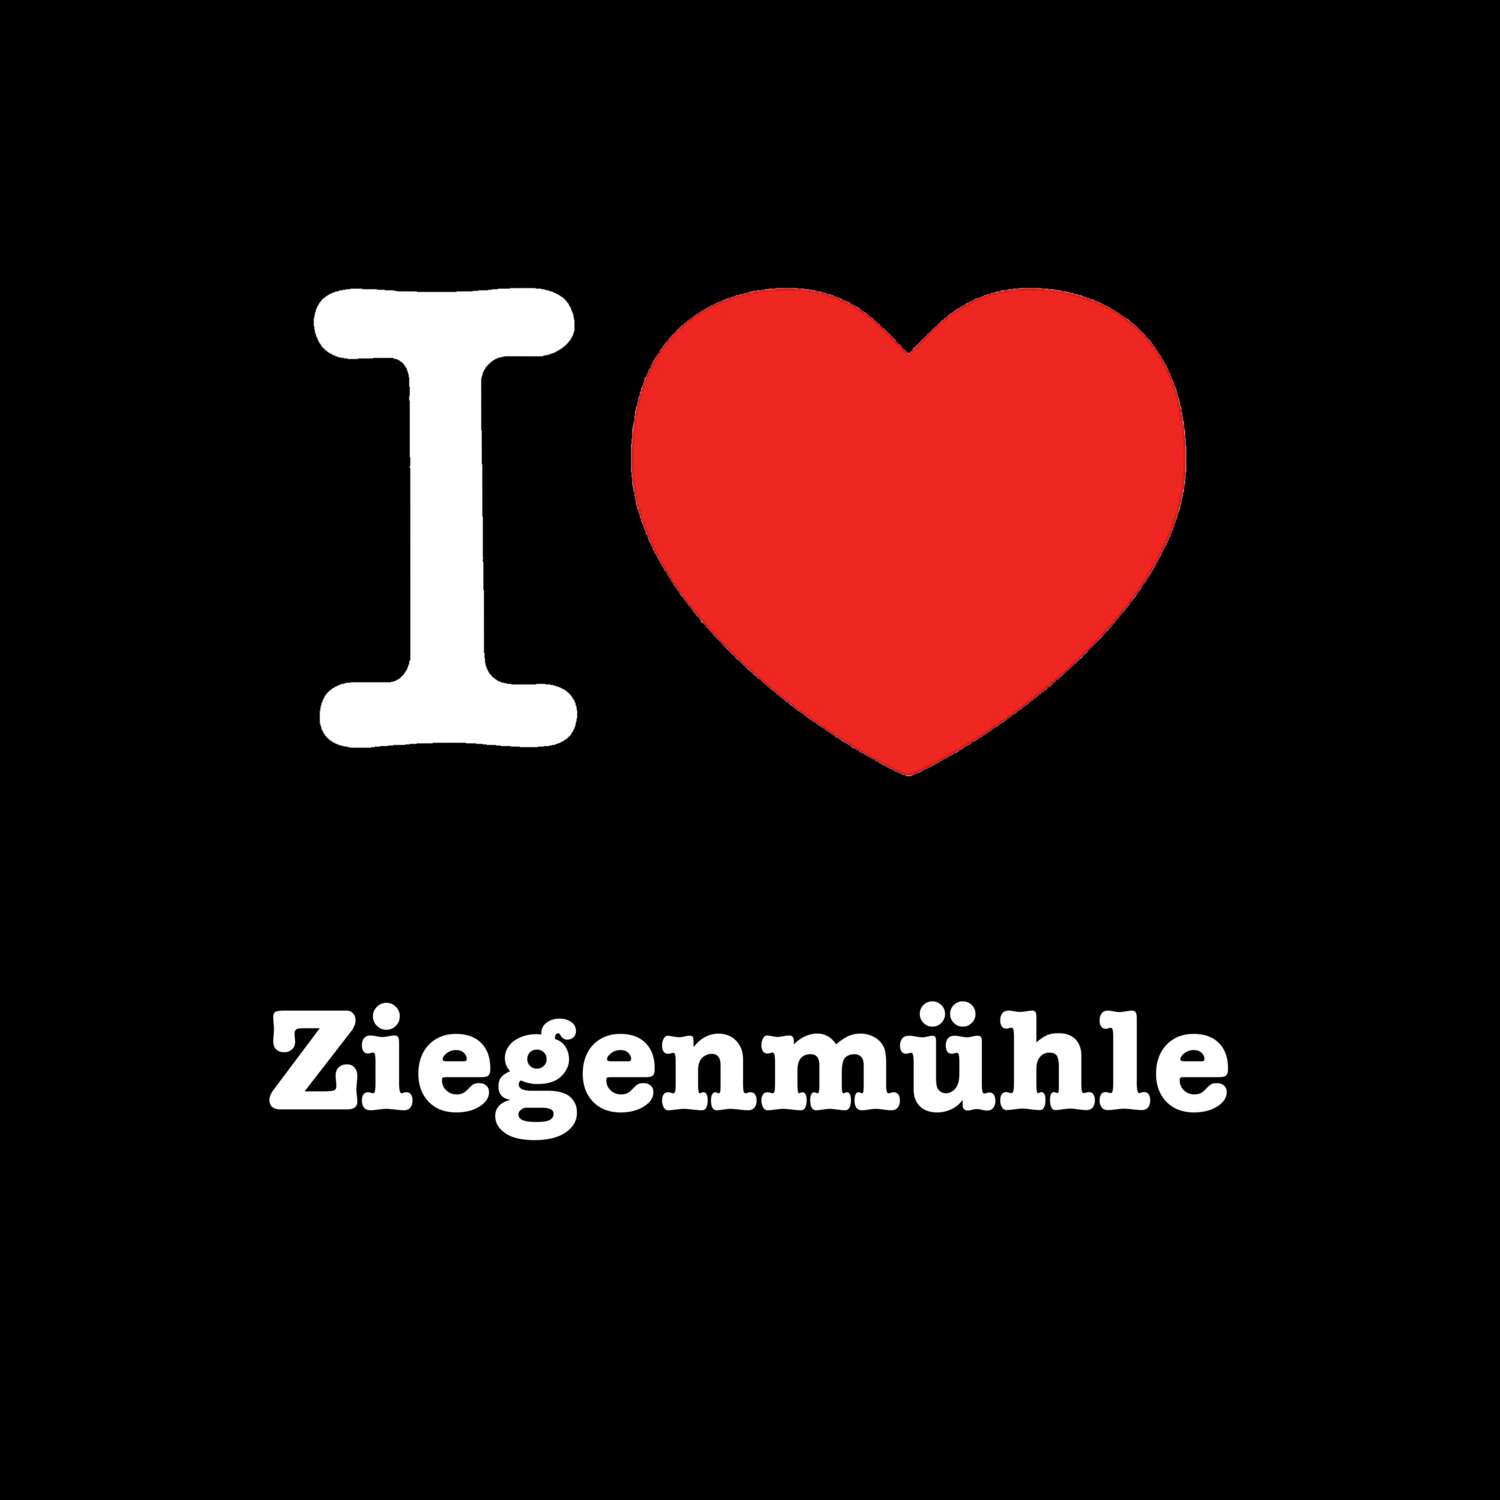 Ziegenmühle T-Shirt »I love«